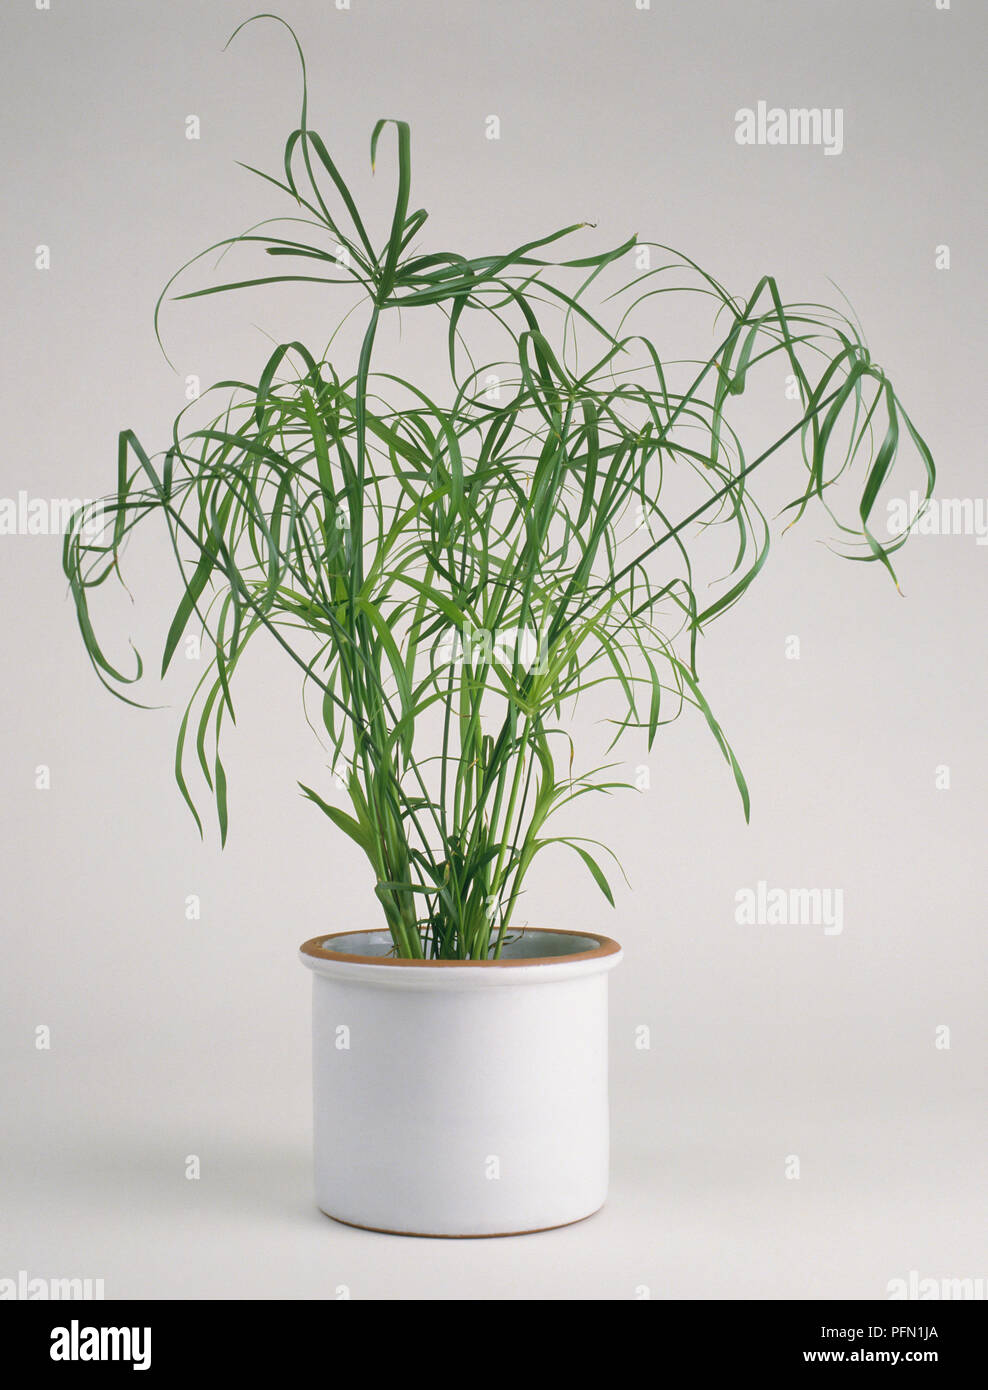 Cyperus alternifolius 'Gracilis' (Umbrella plant) in white ceramic plant pot Stock Photo